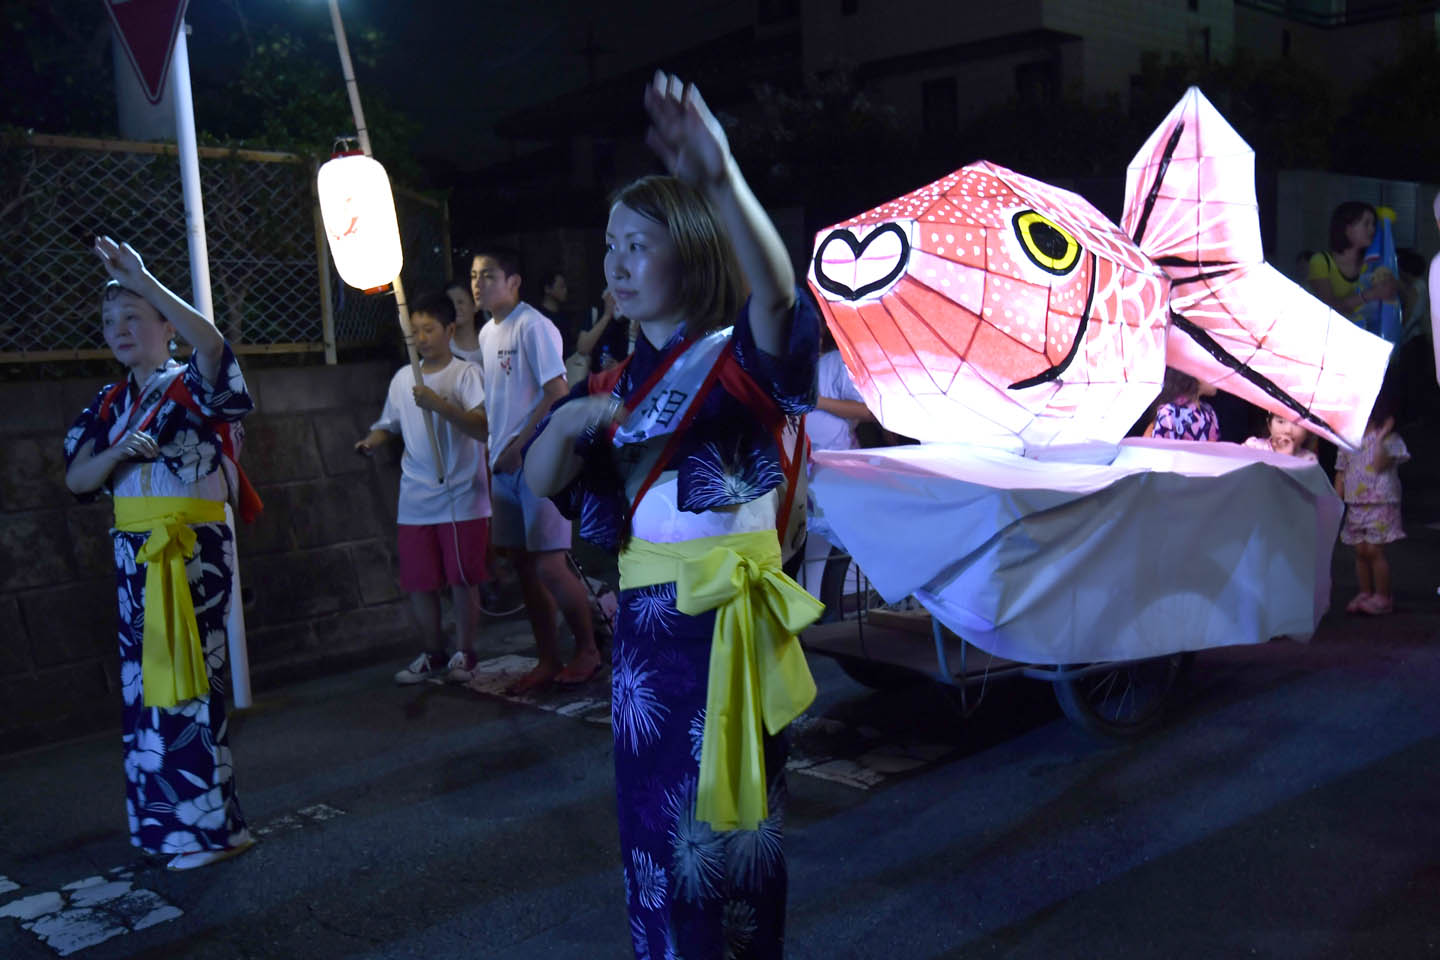 Frauen in Yukata bei einer Schreinparade mit beleuchteten Figuren